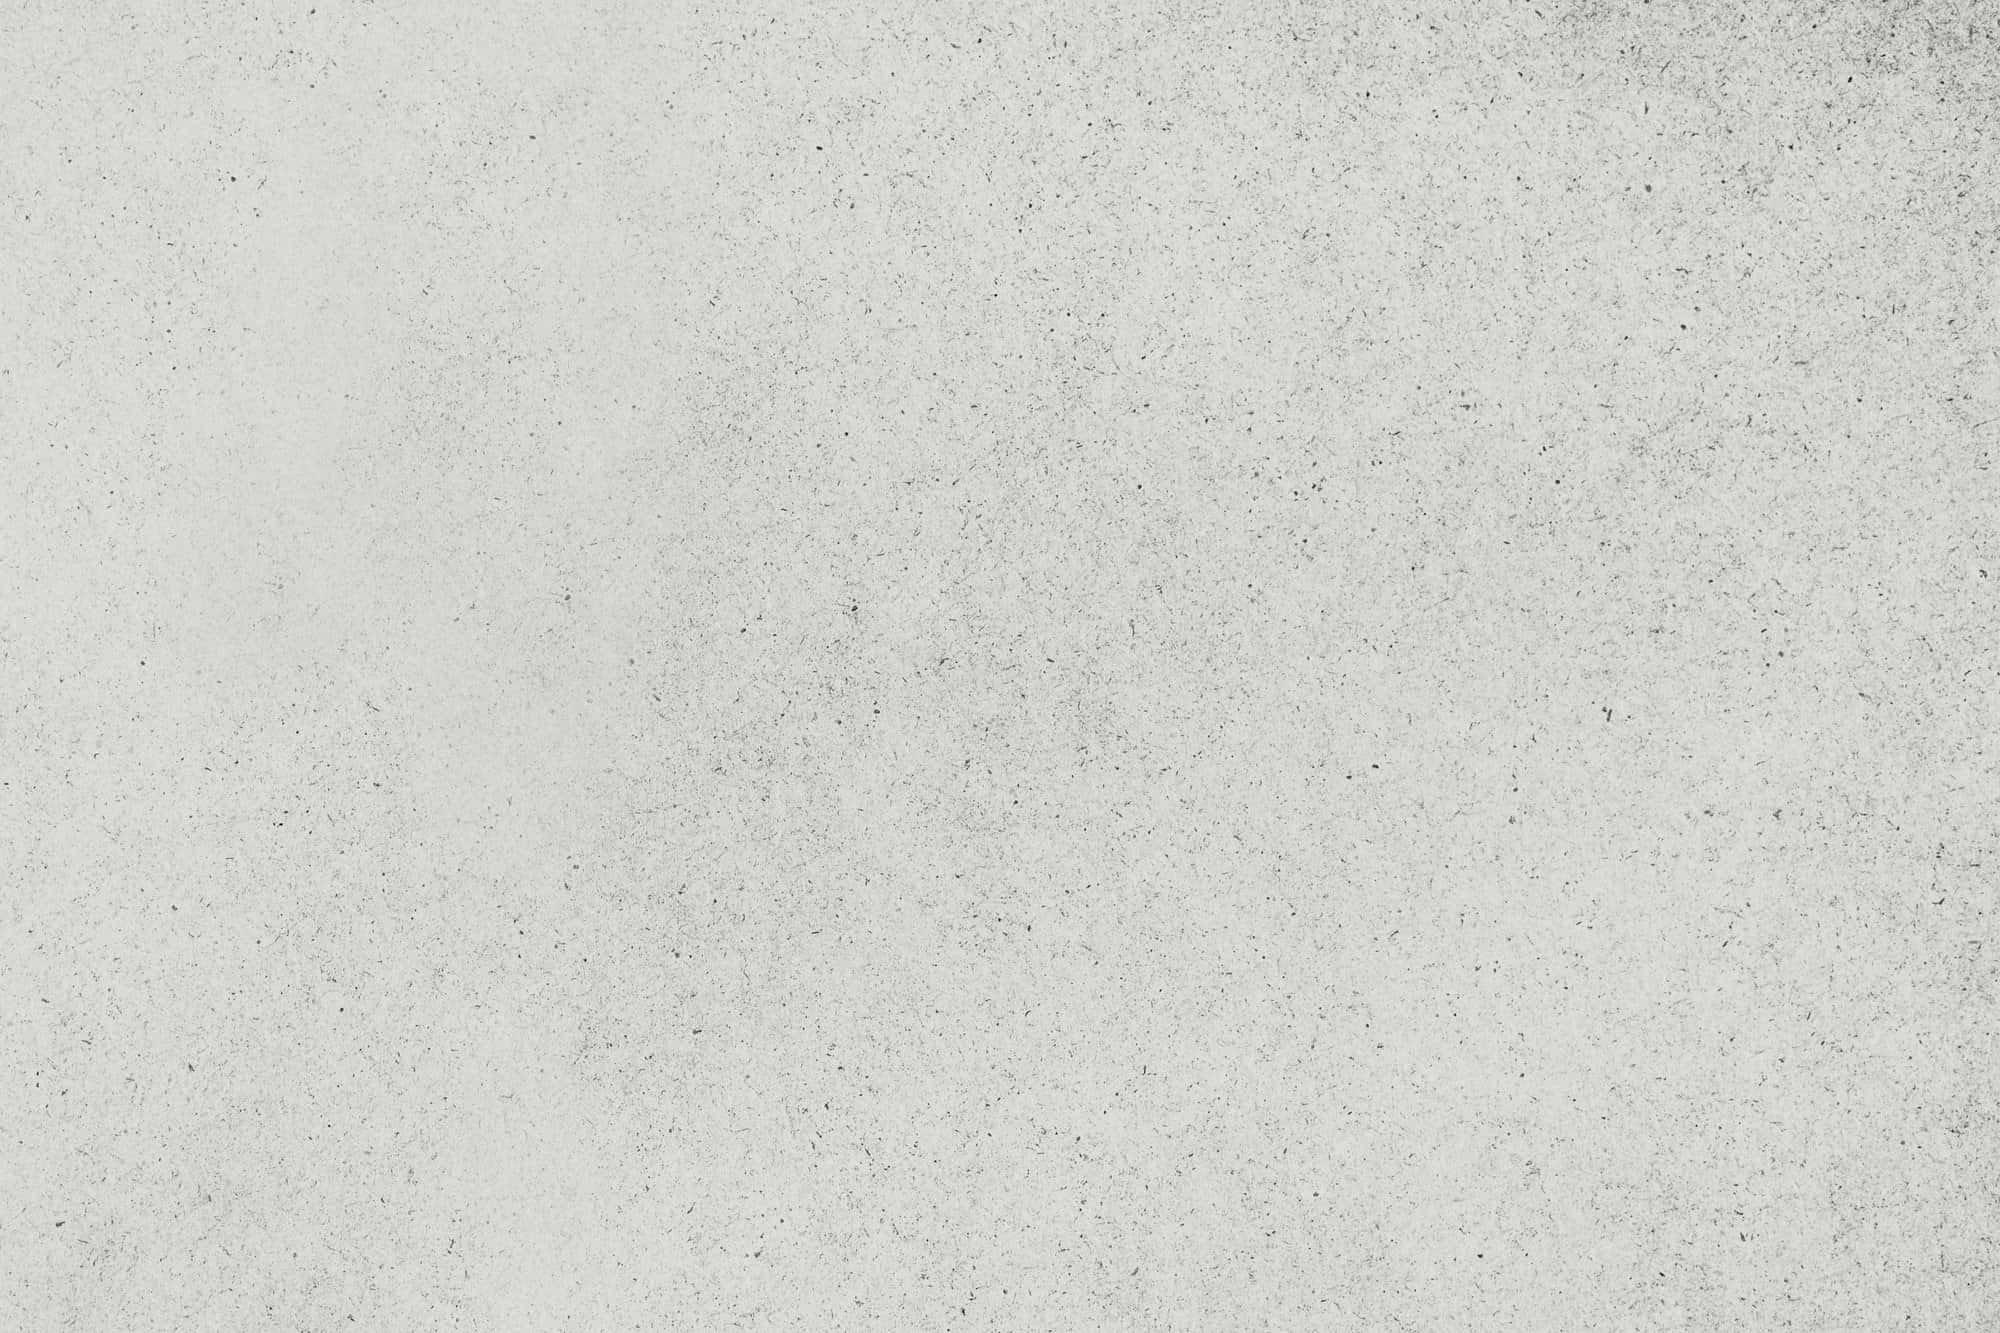 Immaginedi Una Texture Di Cemento Bianco Liscio